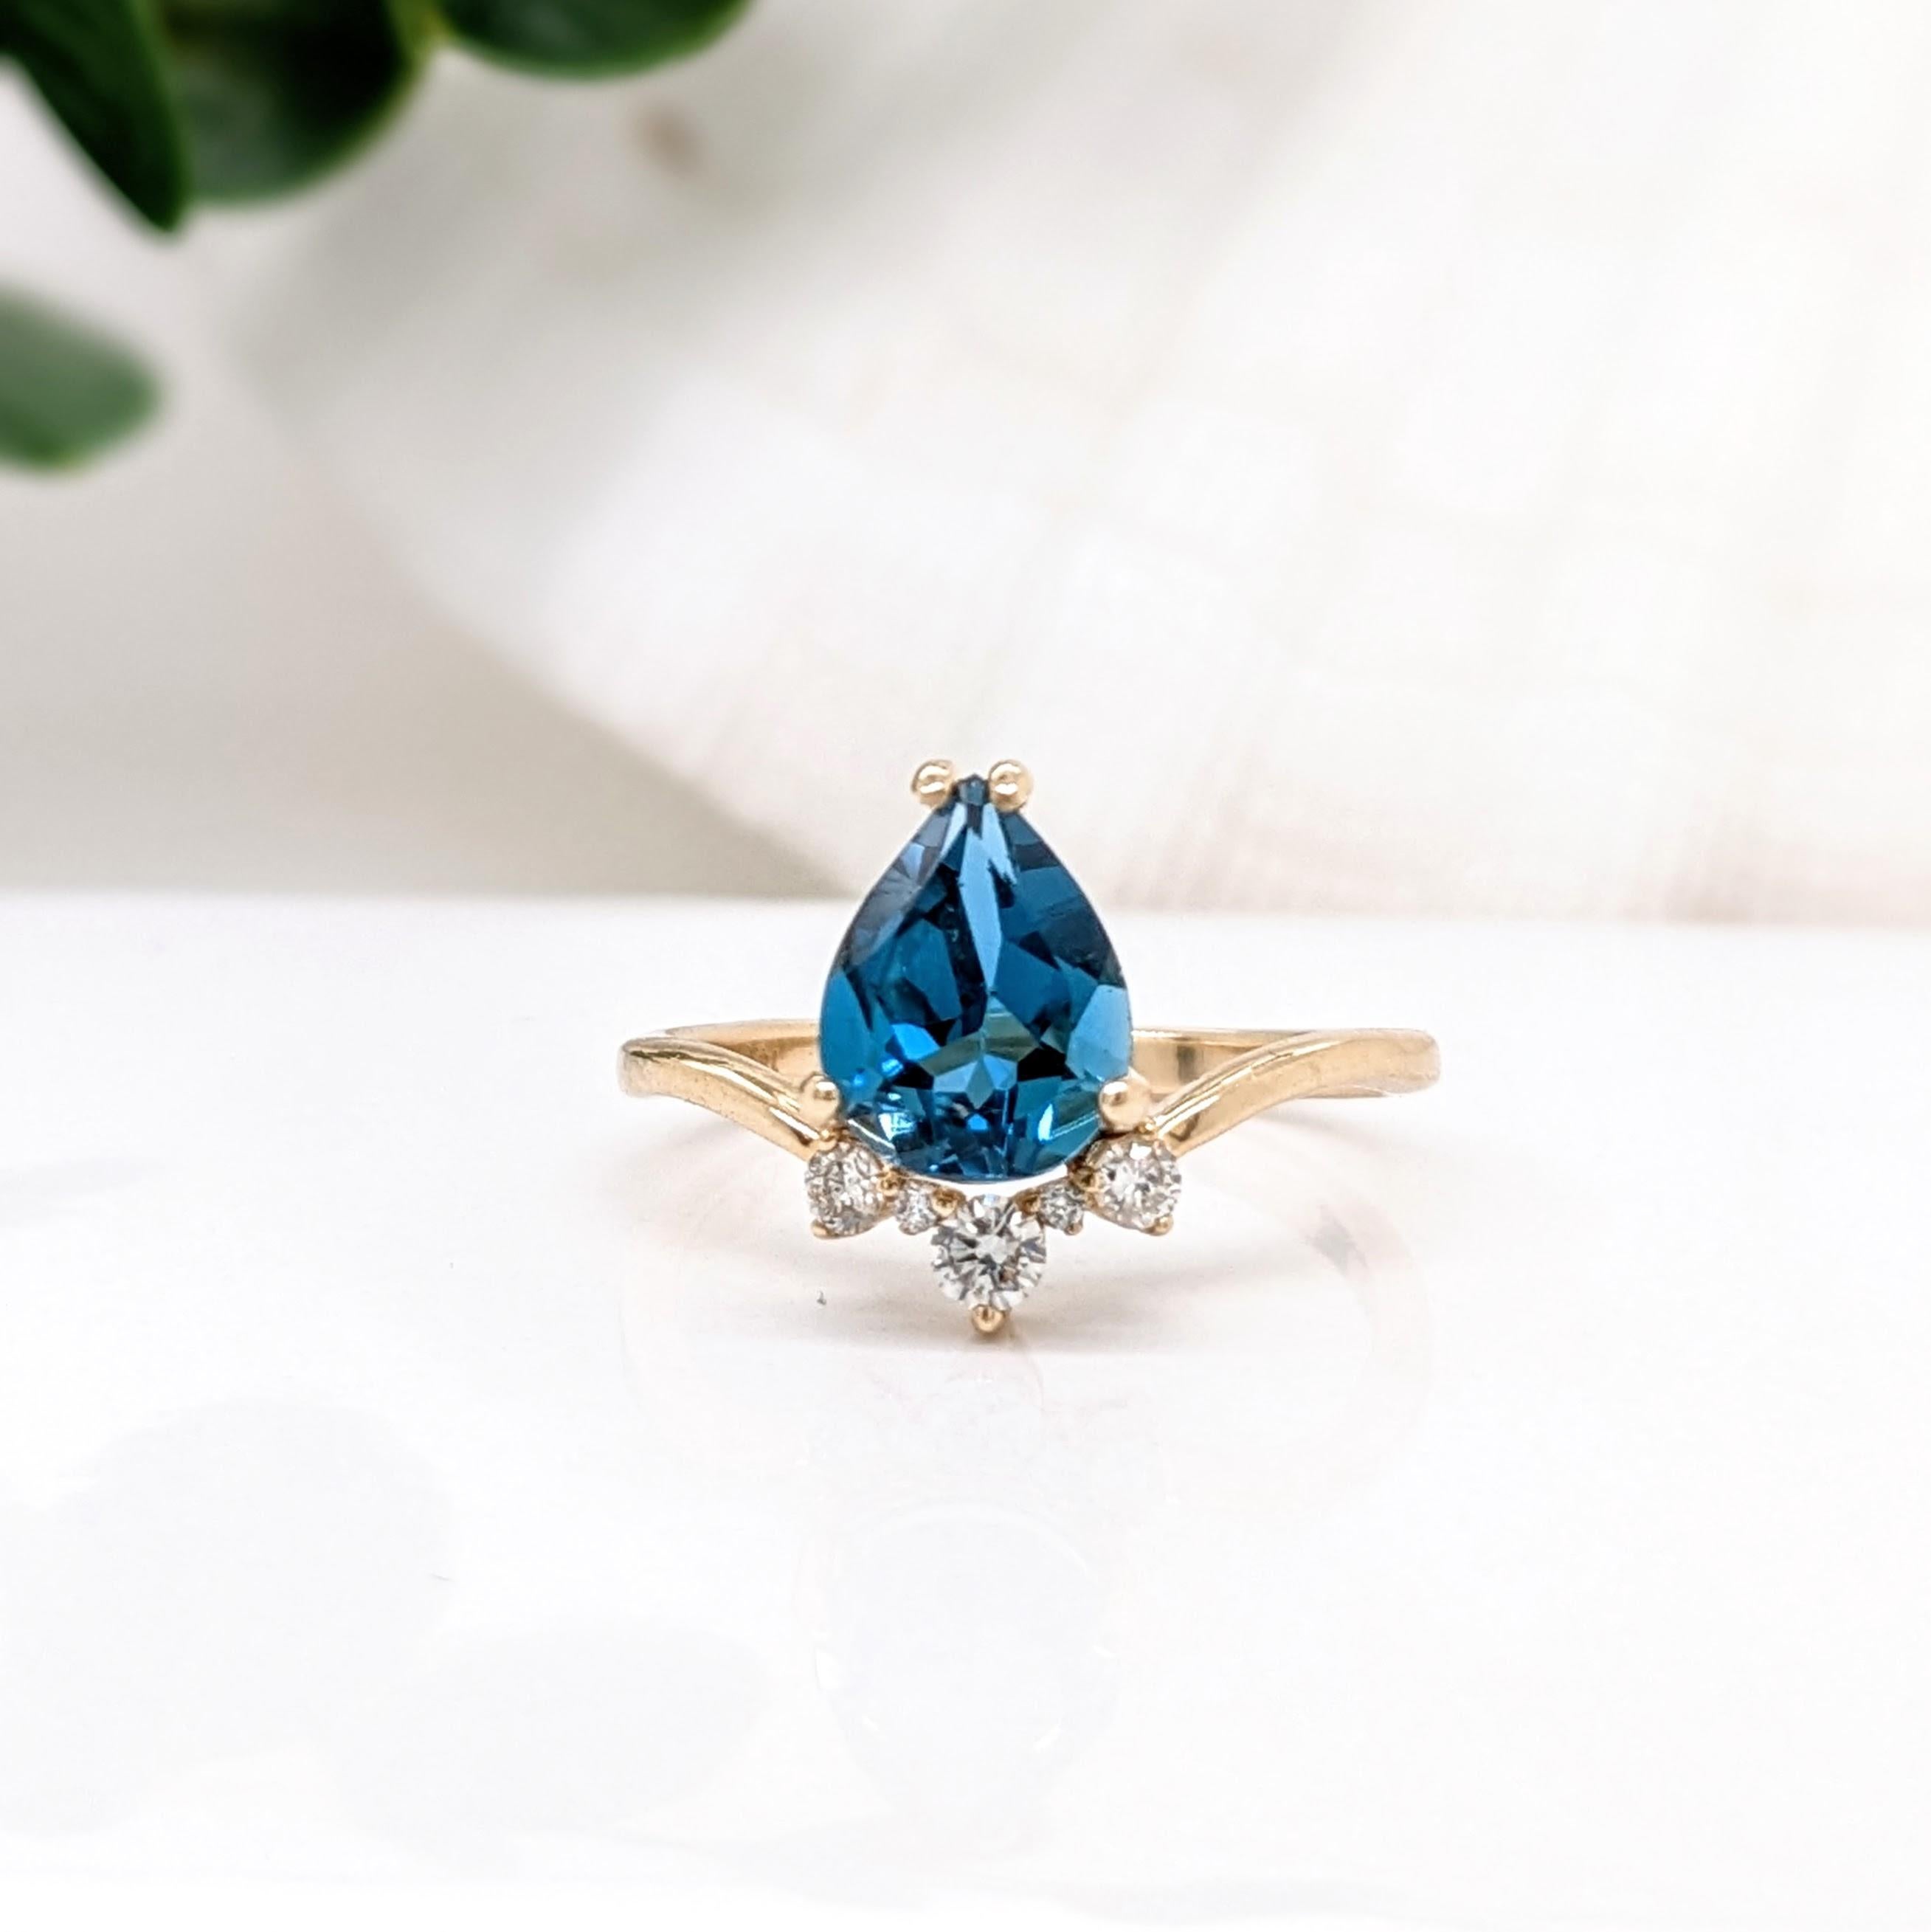 Ein wunderschöner blauer Topas im Birnenschliff, eingefasst in einen Ring aus 14 Karat Gelbgold mit Diamantakzenten in einer Form, die an ein Diadem erinnert. Ein schöner und einzigartiger Ring für jede Gelegenheit!

Spezifikationen:

Artikel Typ: